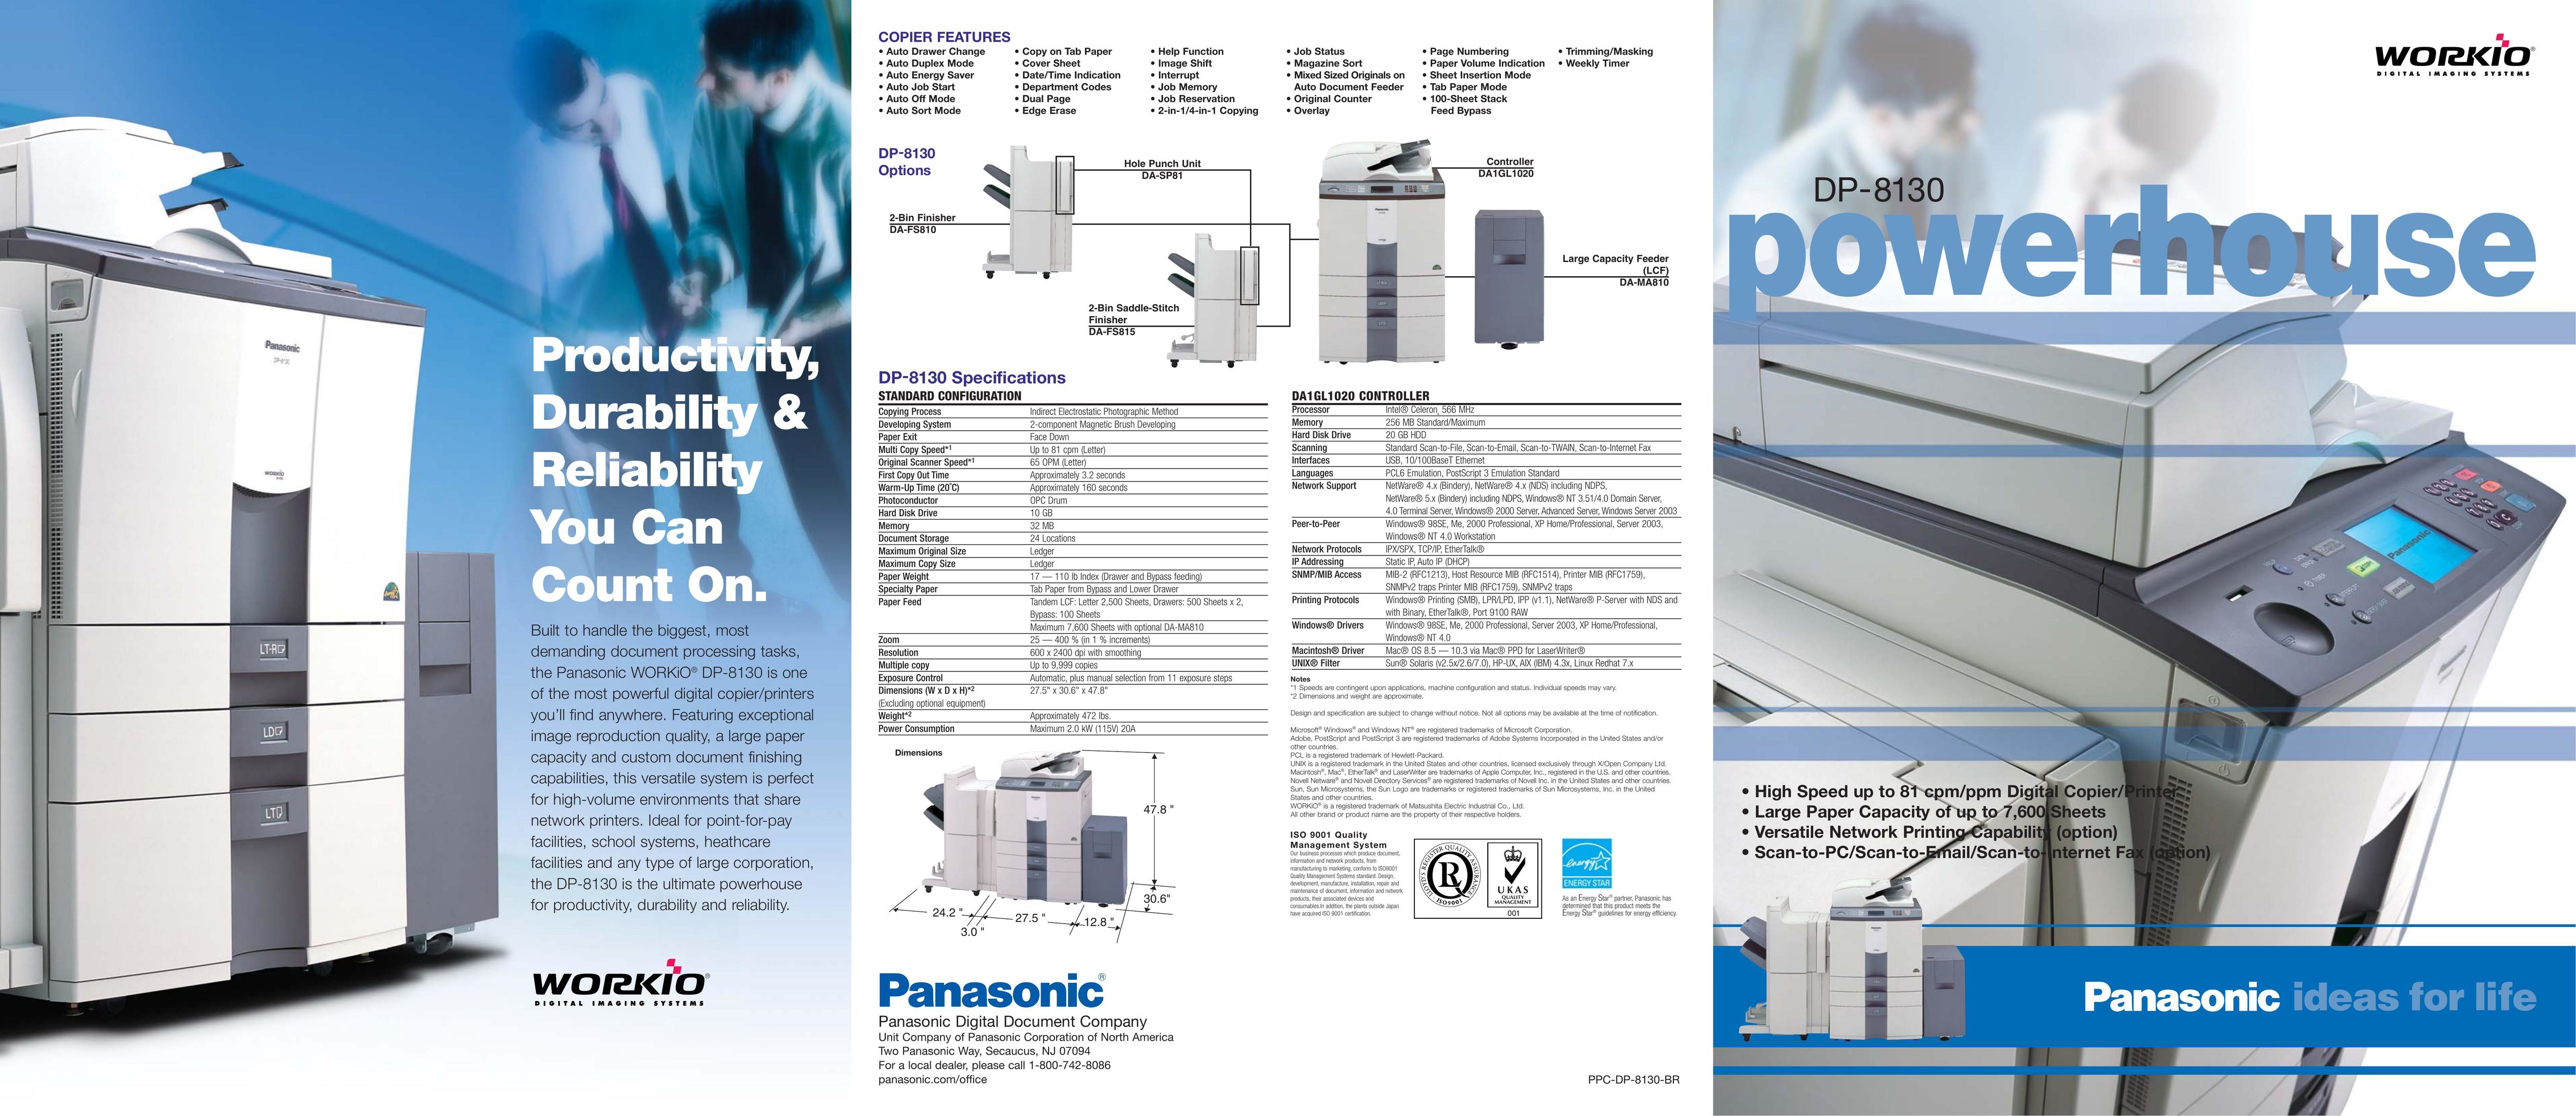 Panasonic DP-8130 All in One Printer User Manual